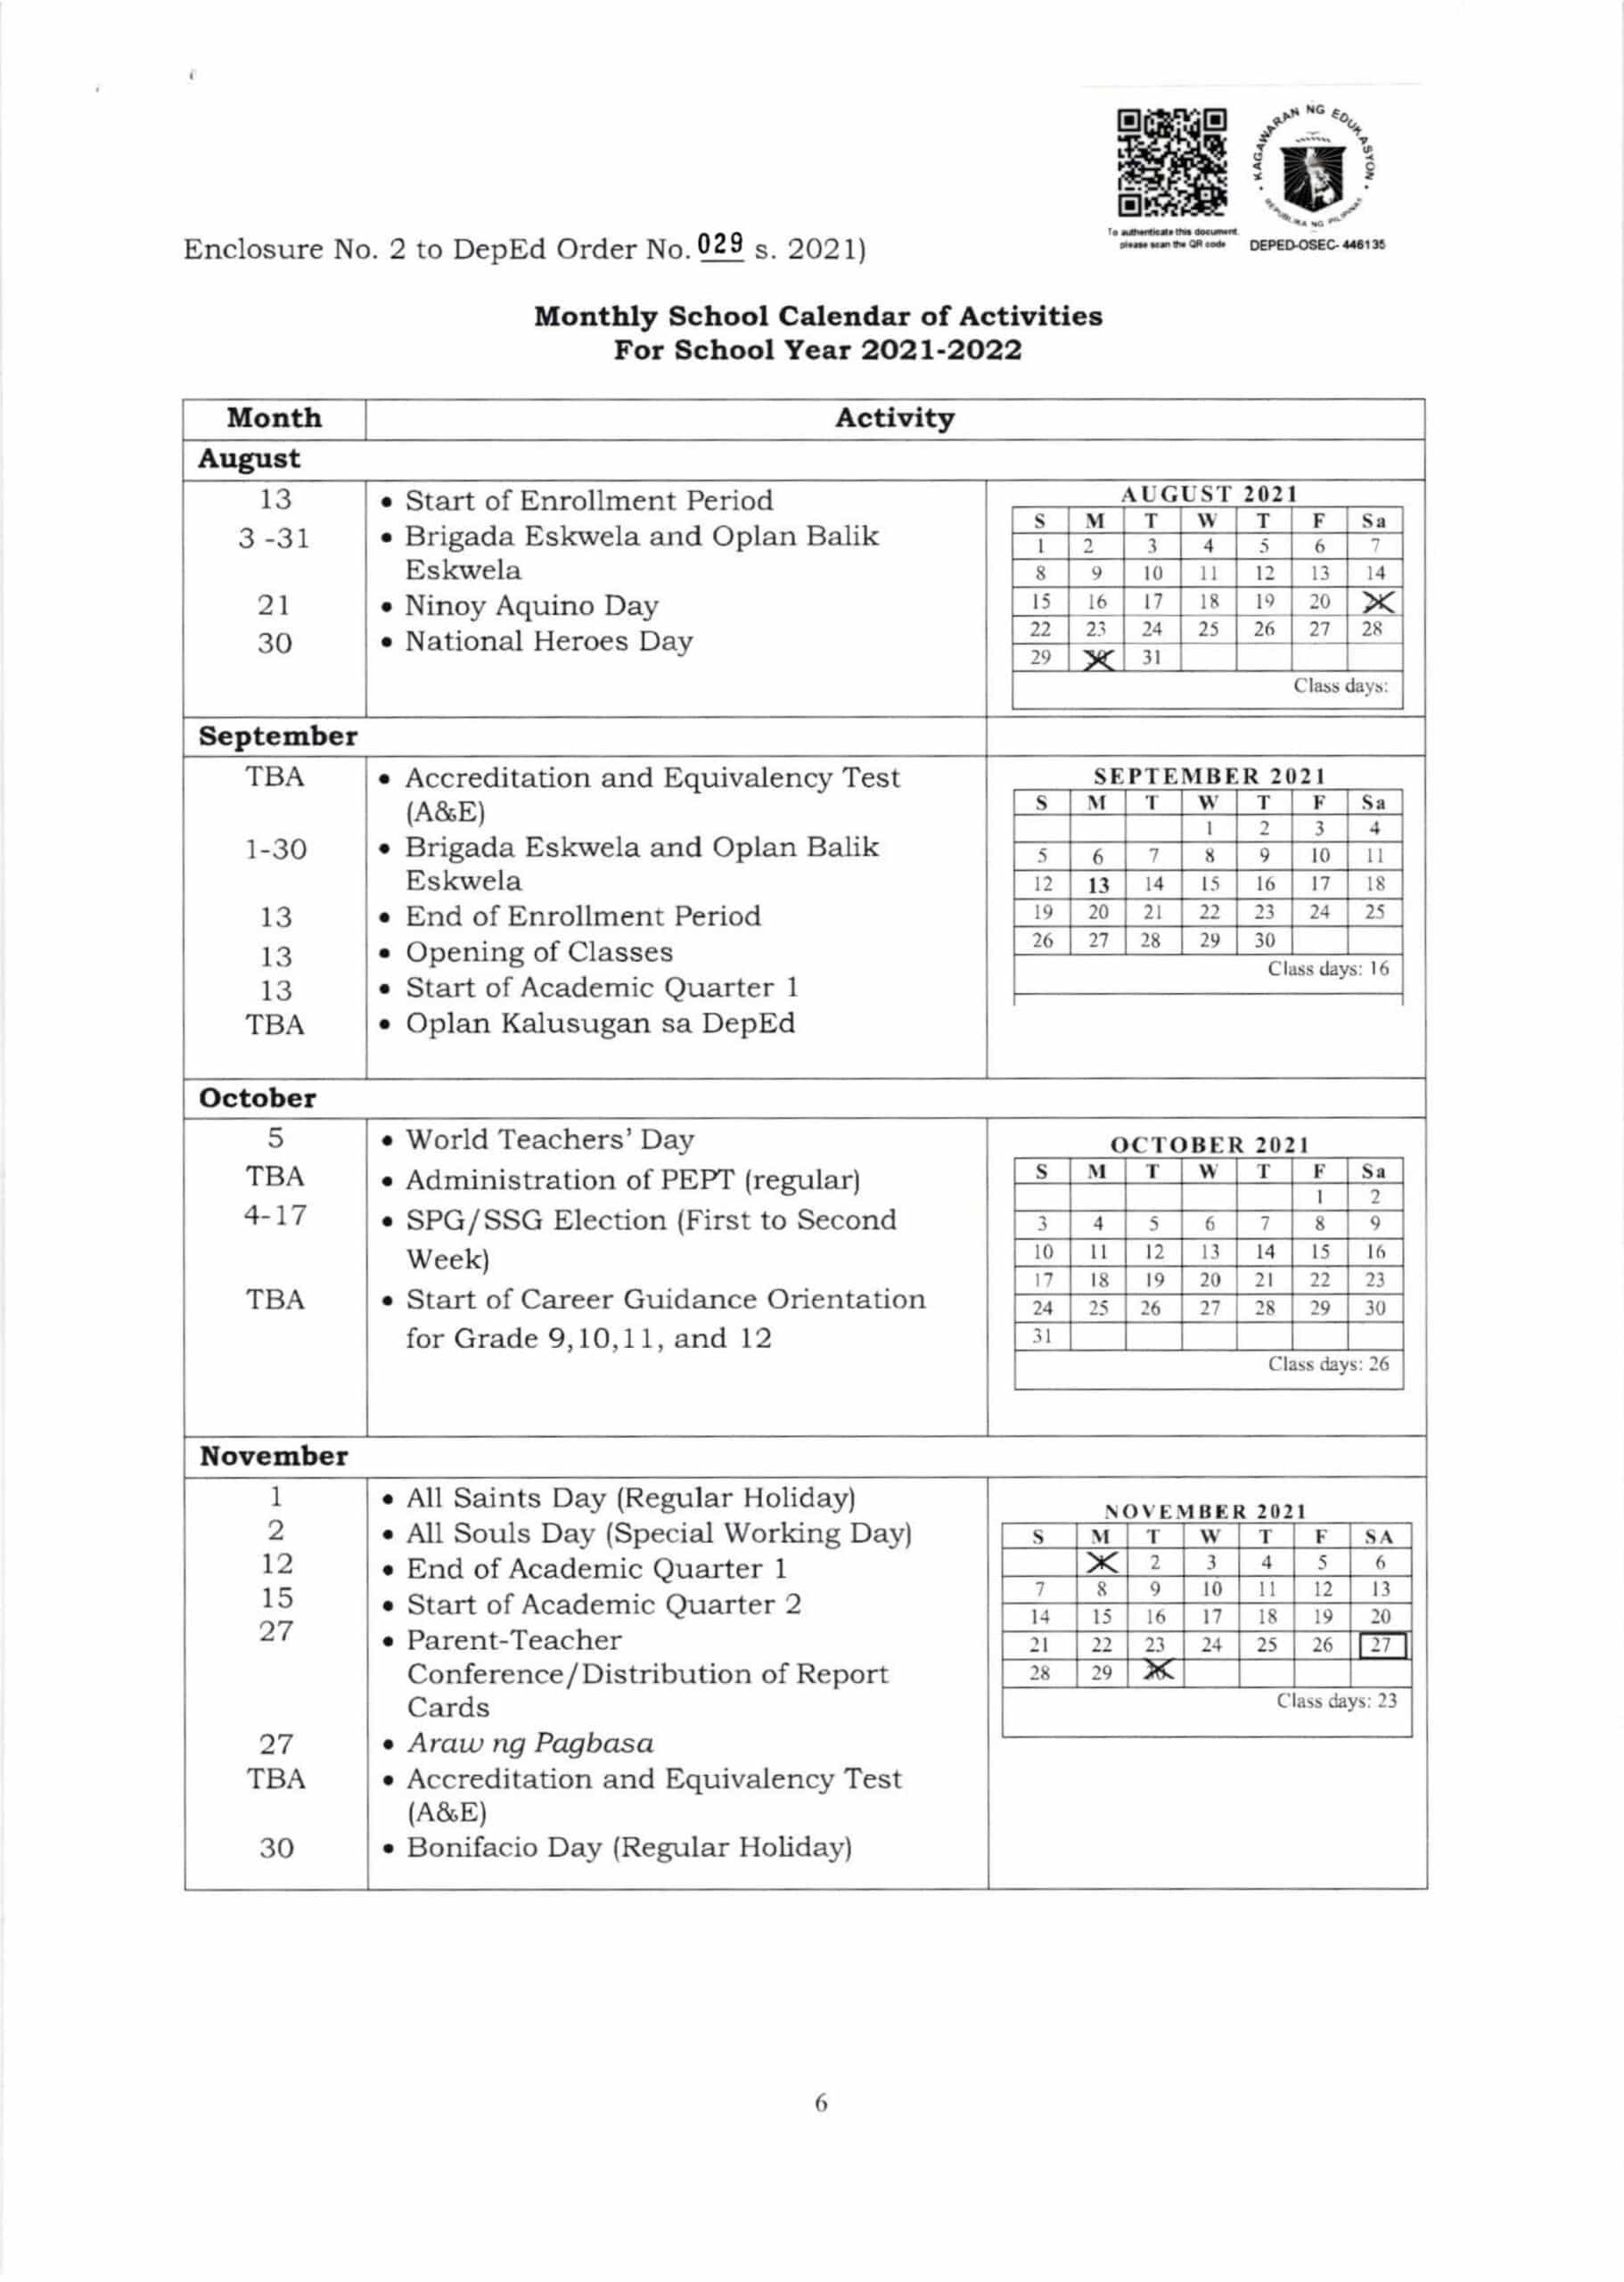 deped-school-calendar-and-activities-for-school-year-2021-2022-teacherph